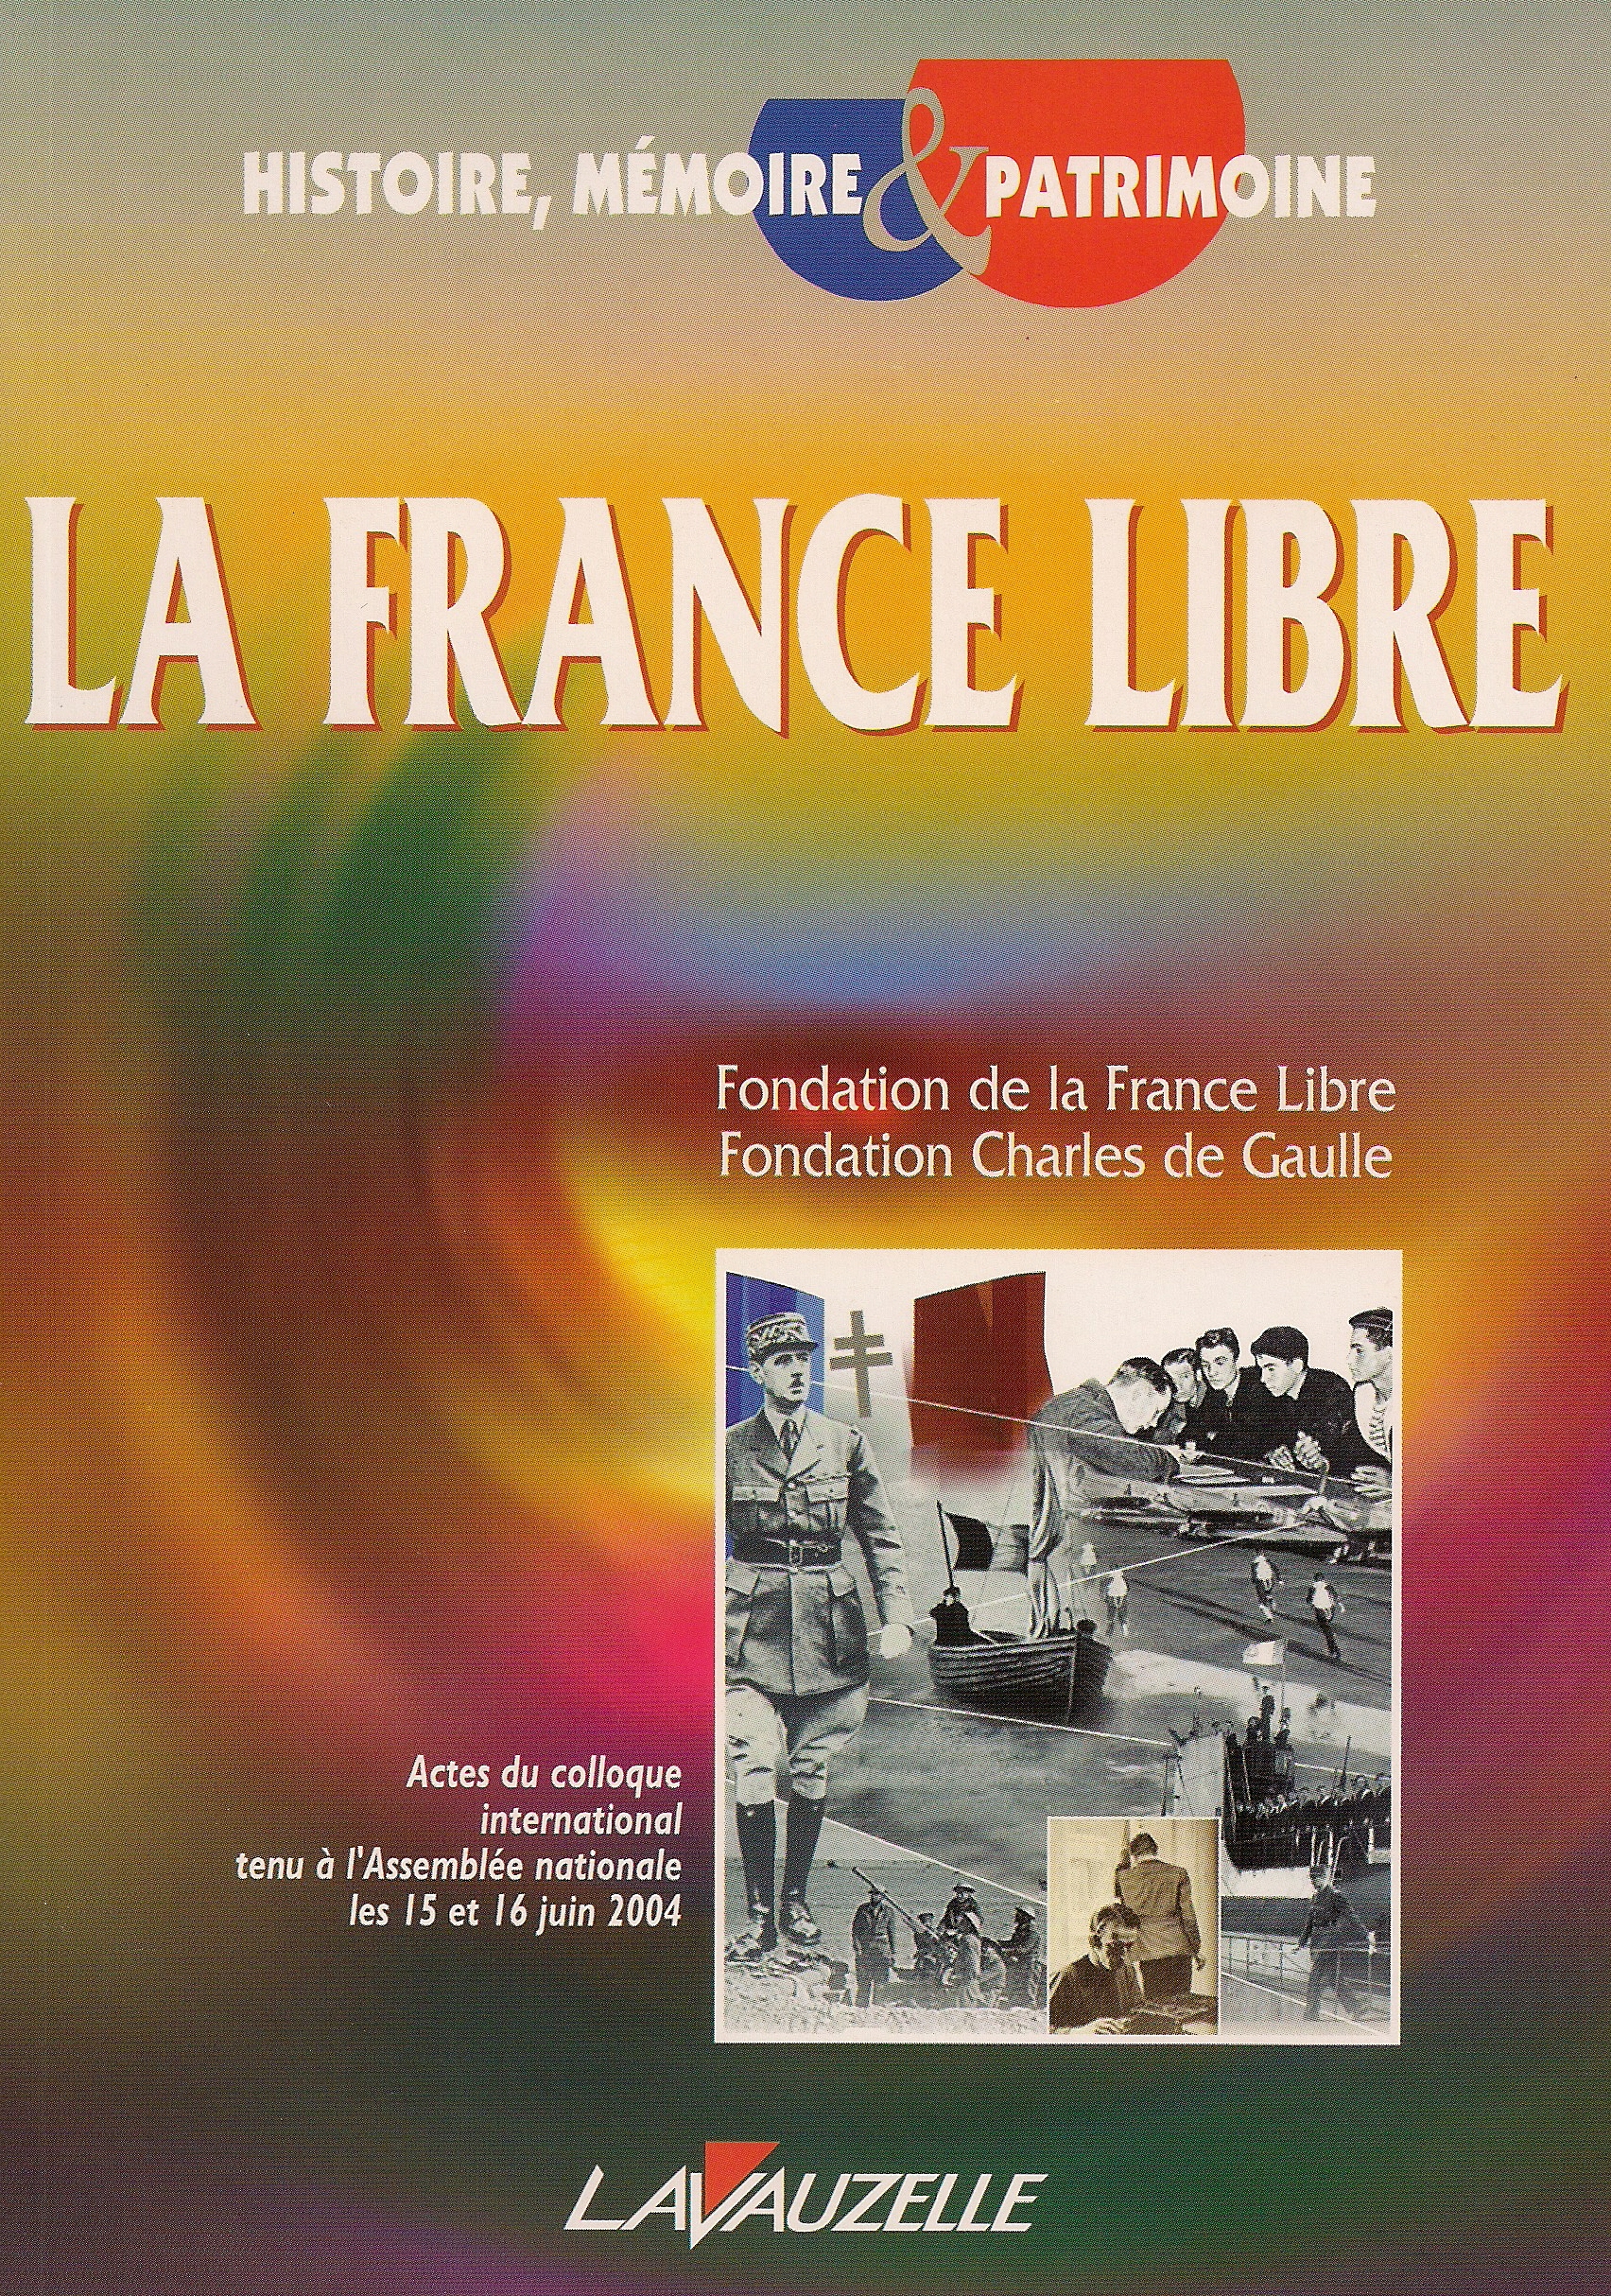 Le colloque international sur la France Libre